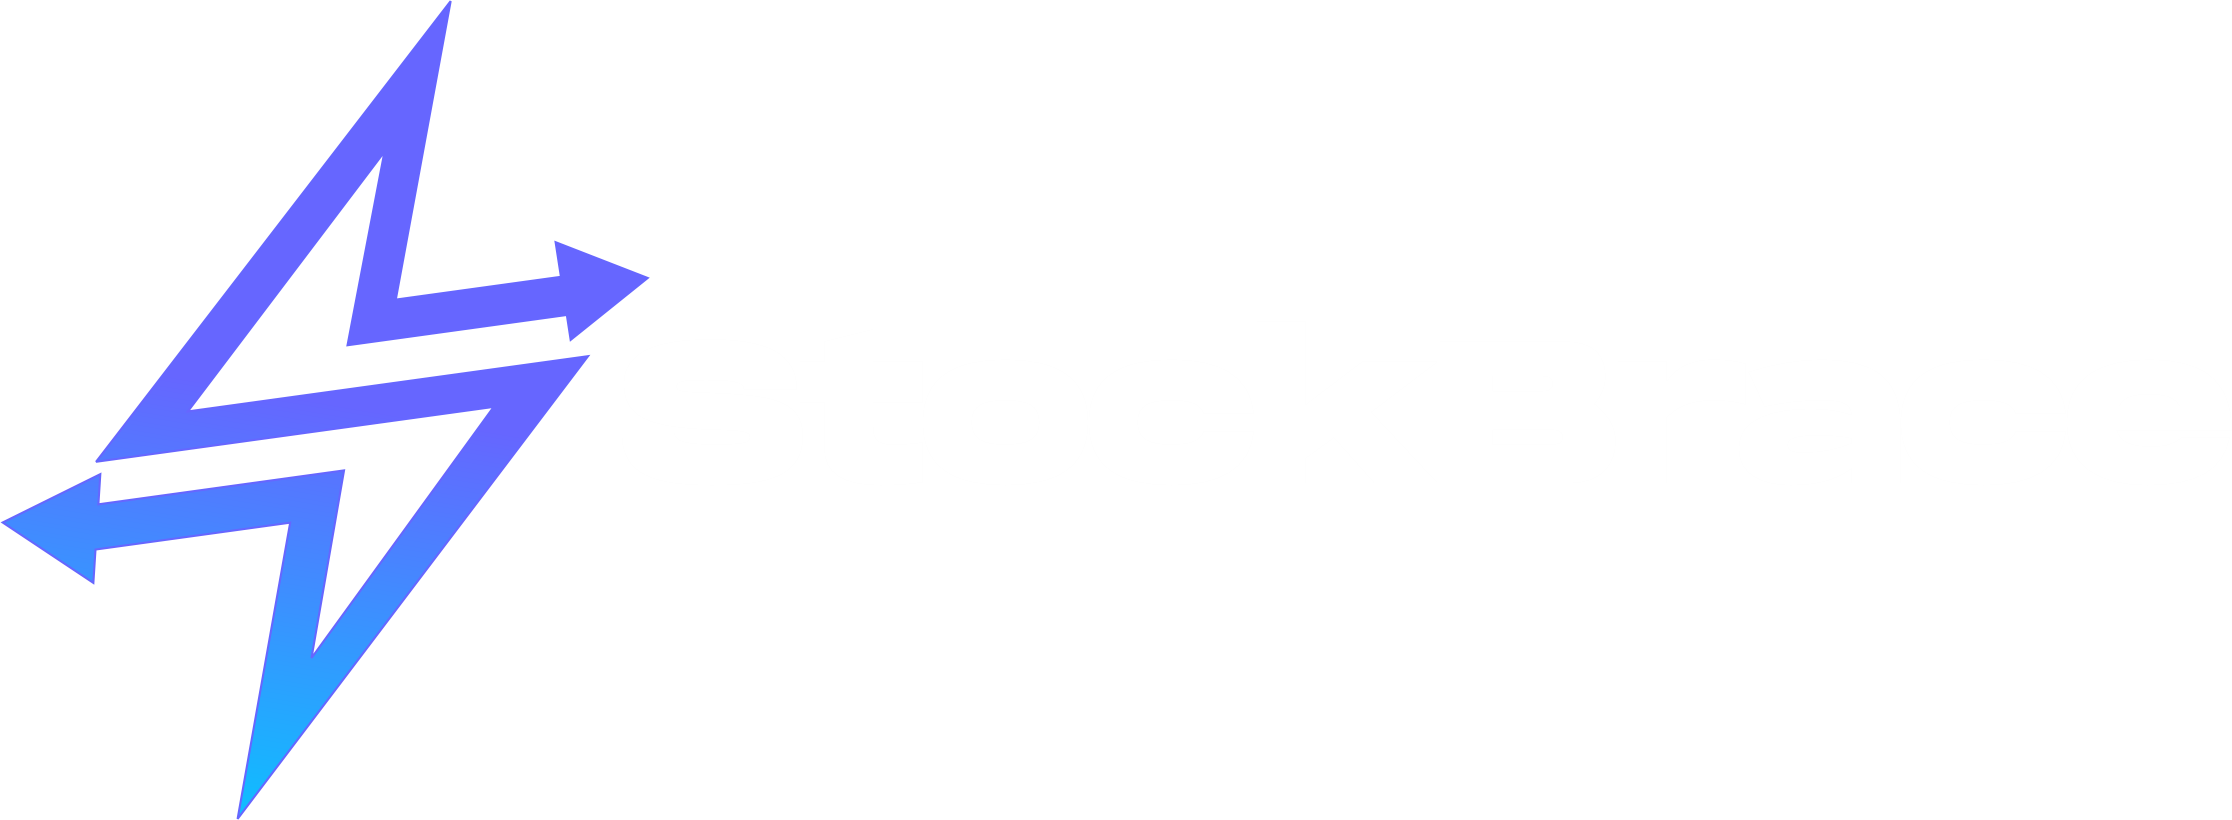 Stockbrace